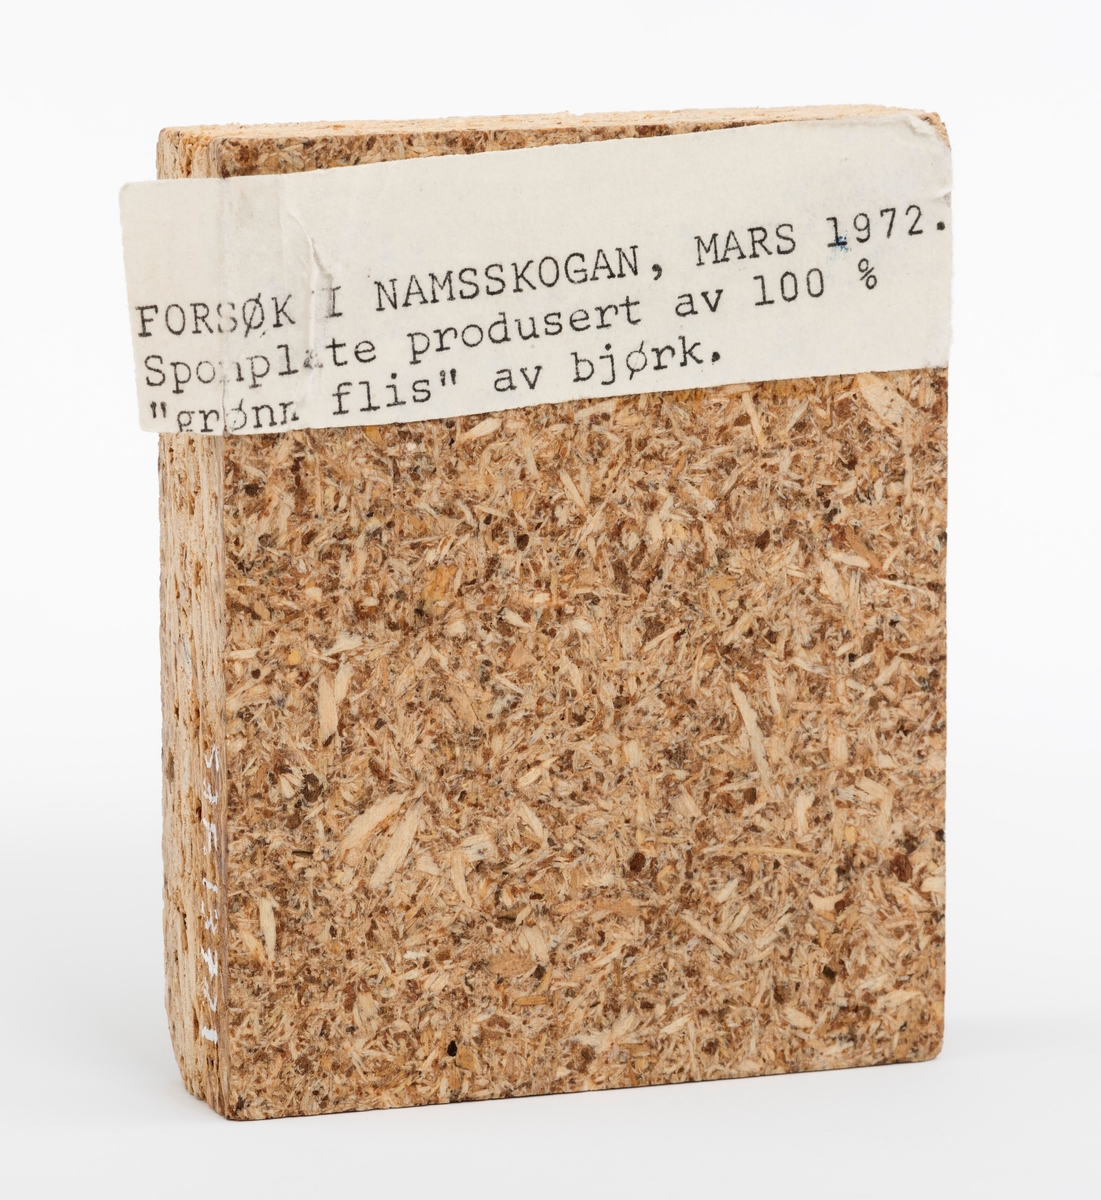 En rektangulær sponplate, vareprøve på 8,8 cm x 7 cm x 1,8 cm. Plata har glatt fram- og bakside.  På vareprøvas ene side er det påklistret en lapp med denne teksten: "Forsøk i Namskogan, mars 1972. Sponplate produsert av 100 % "grønn flis" av bjørk"